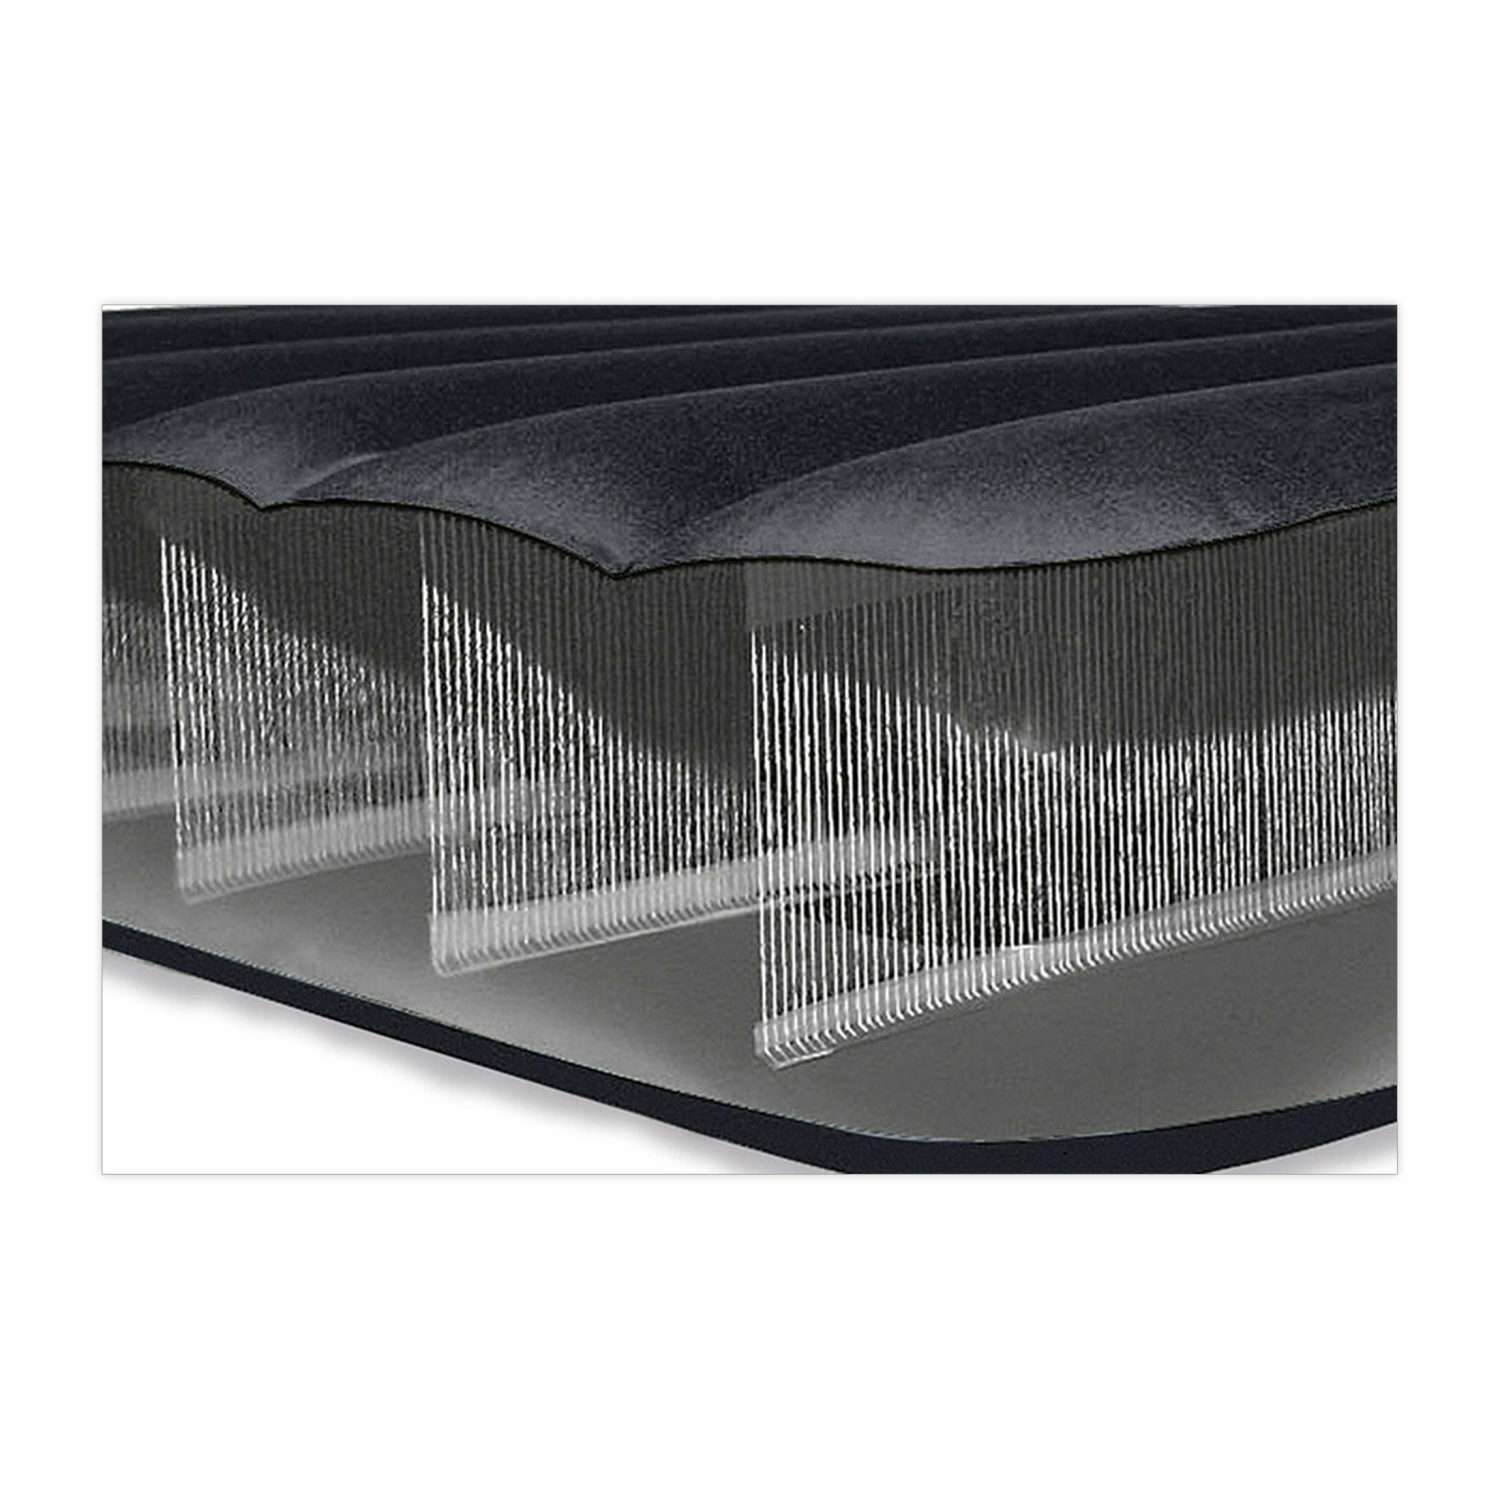 Надувной матрас INTEX кровать с подголовником и встроенным насосом бим стандарт твин 99х191х25 см - фото 4